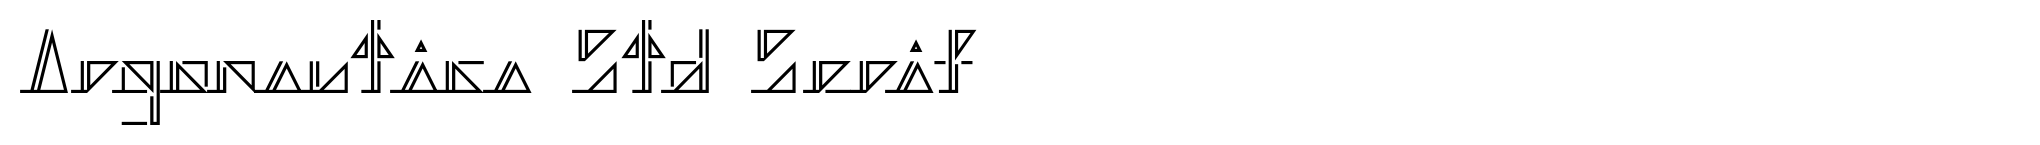 Argonautica Std Serif image